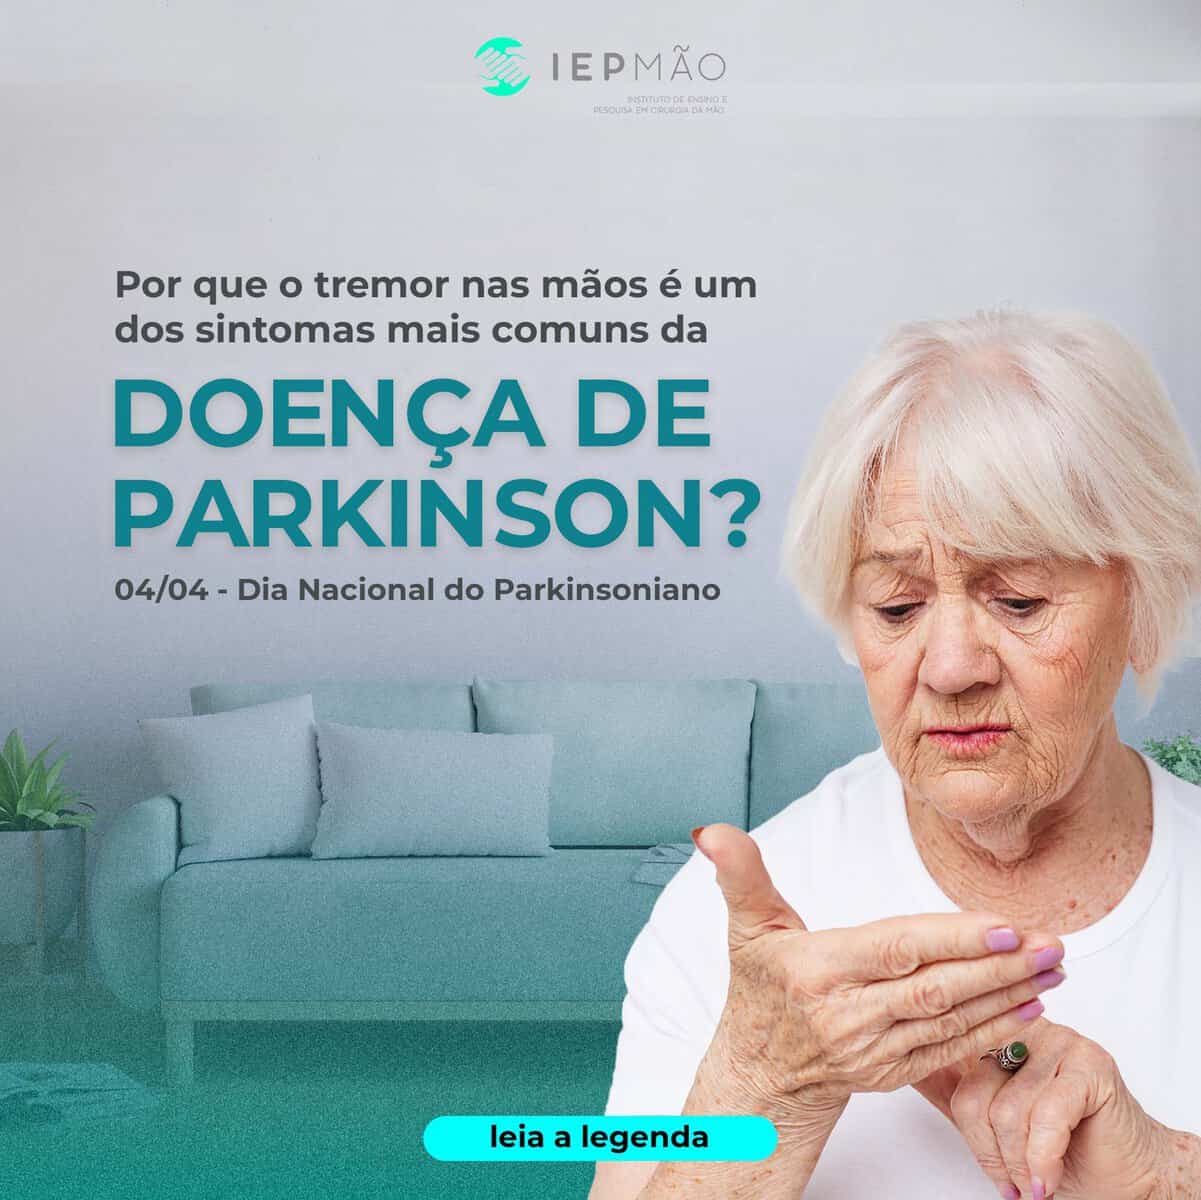 Por que o tremor nas mãos é um dos sintomas mais comuns da Doença de Parkinson? – 04/04 – Dia Nacional do Parkinsoniano